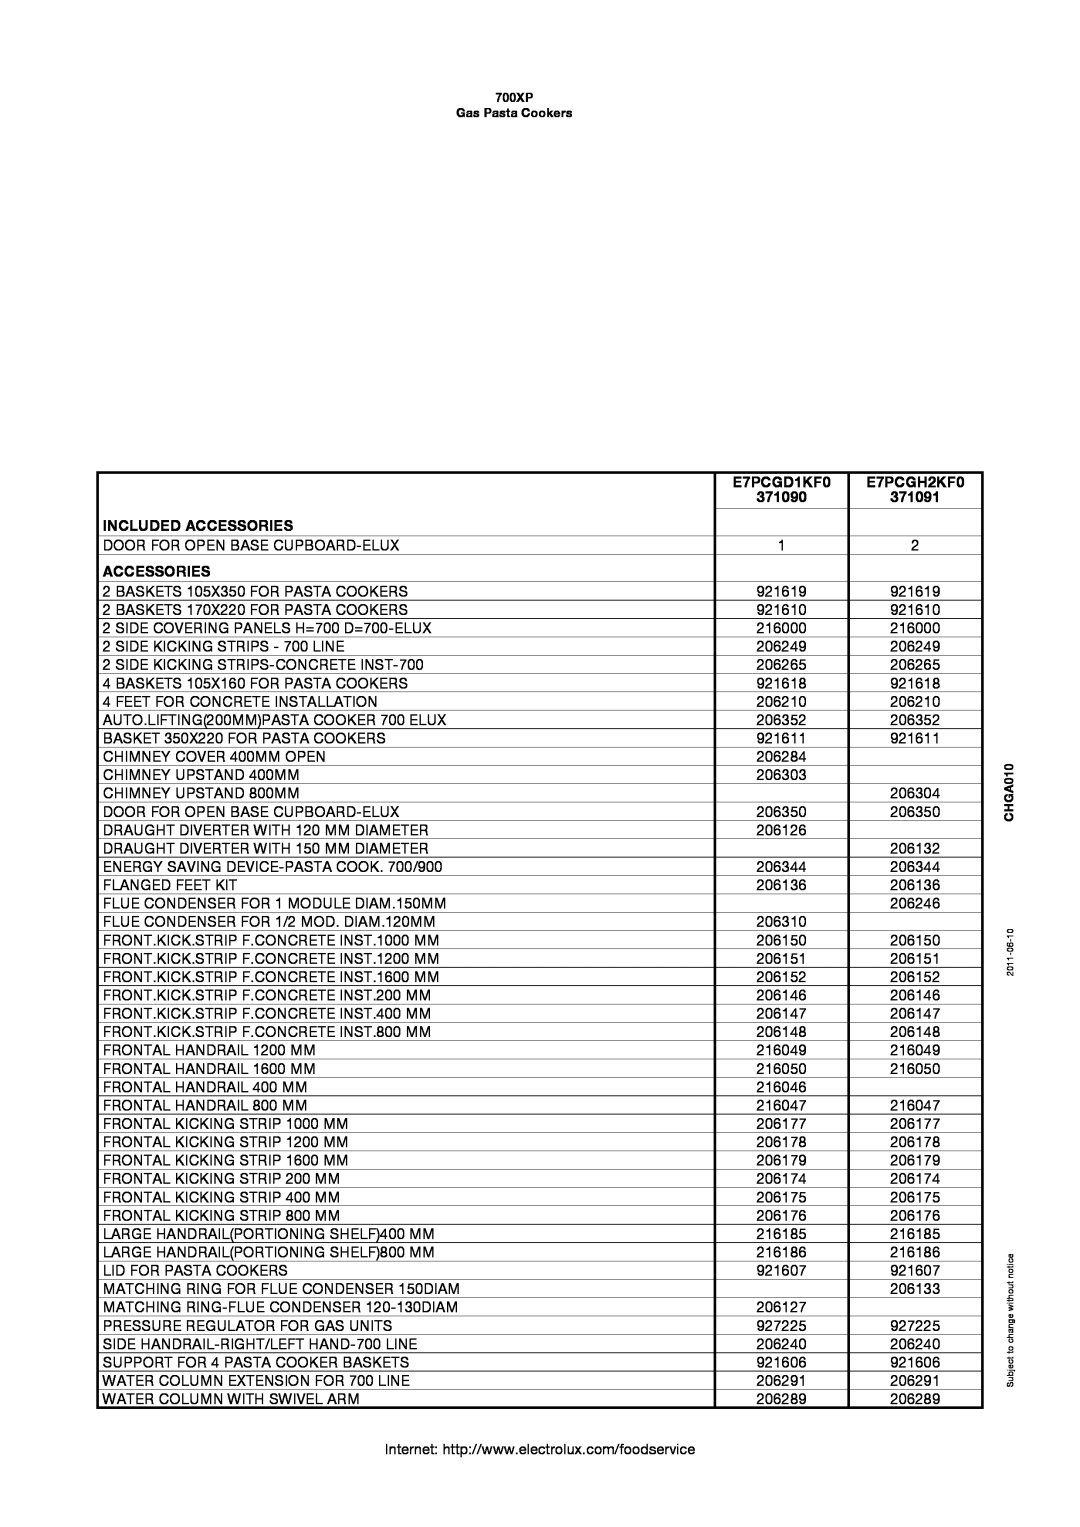 Electrolux 700XP manual E7PCGD1KF0, E7PCGH2KF0, 371090, 371091, Included Accessories 